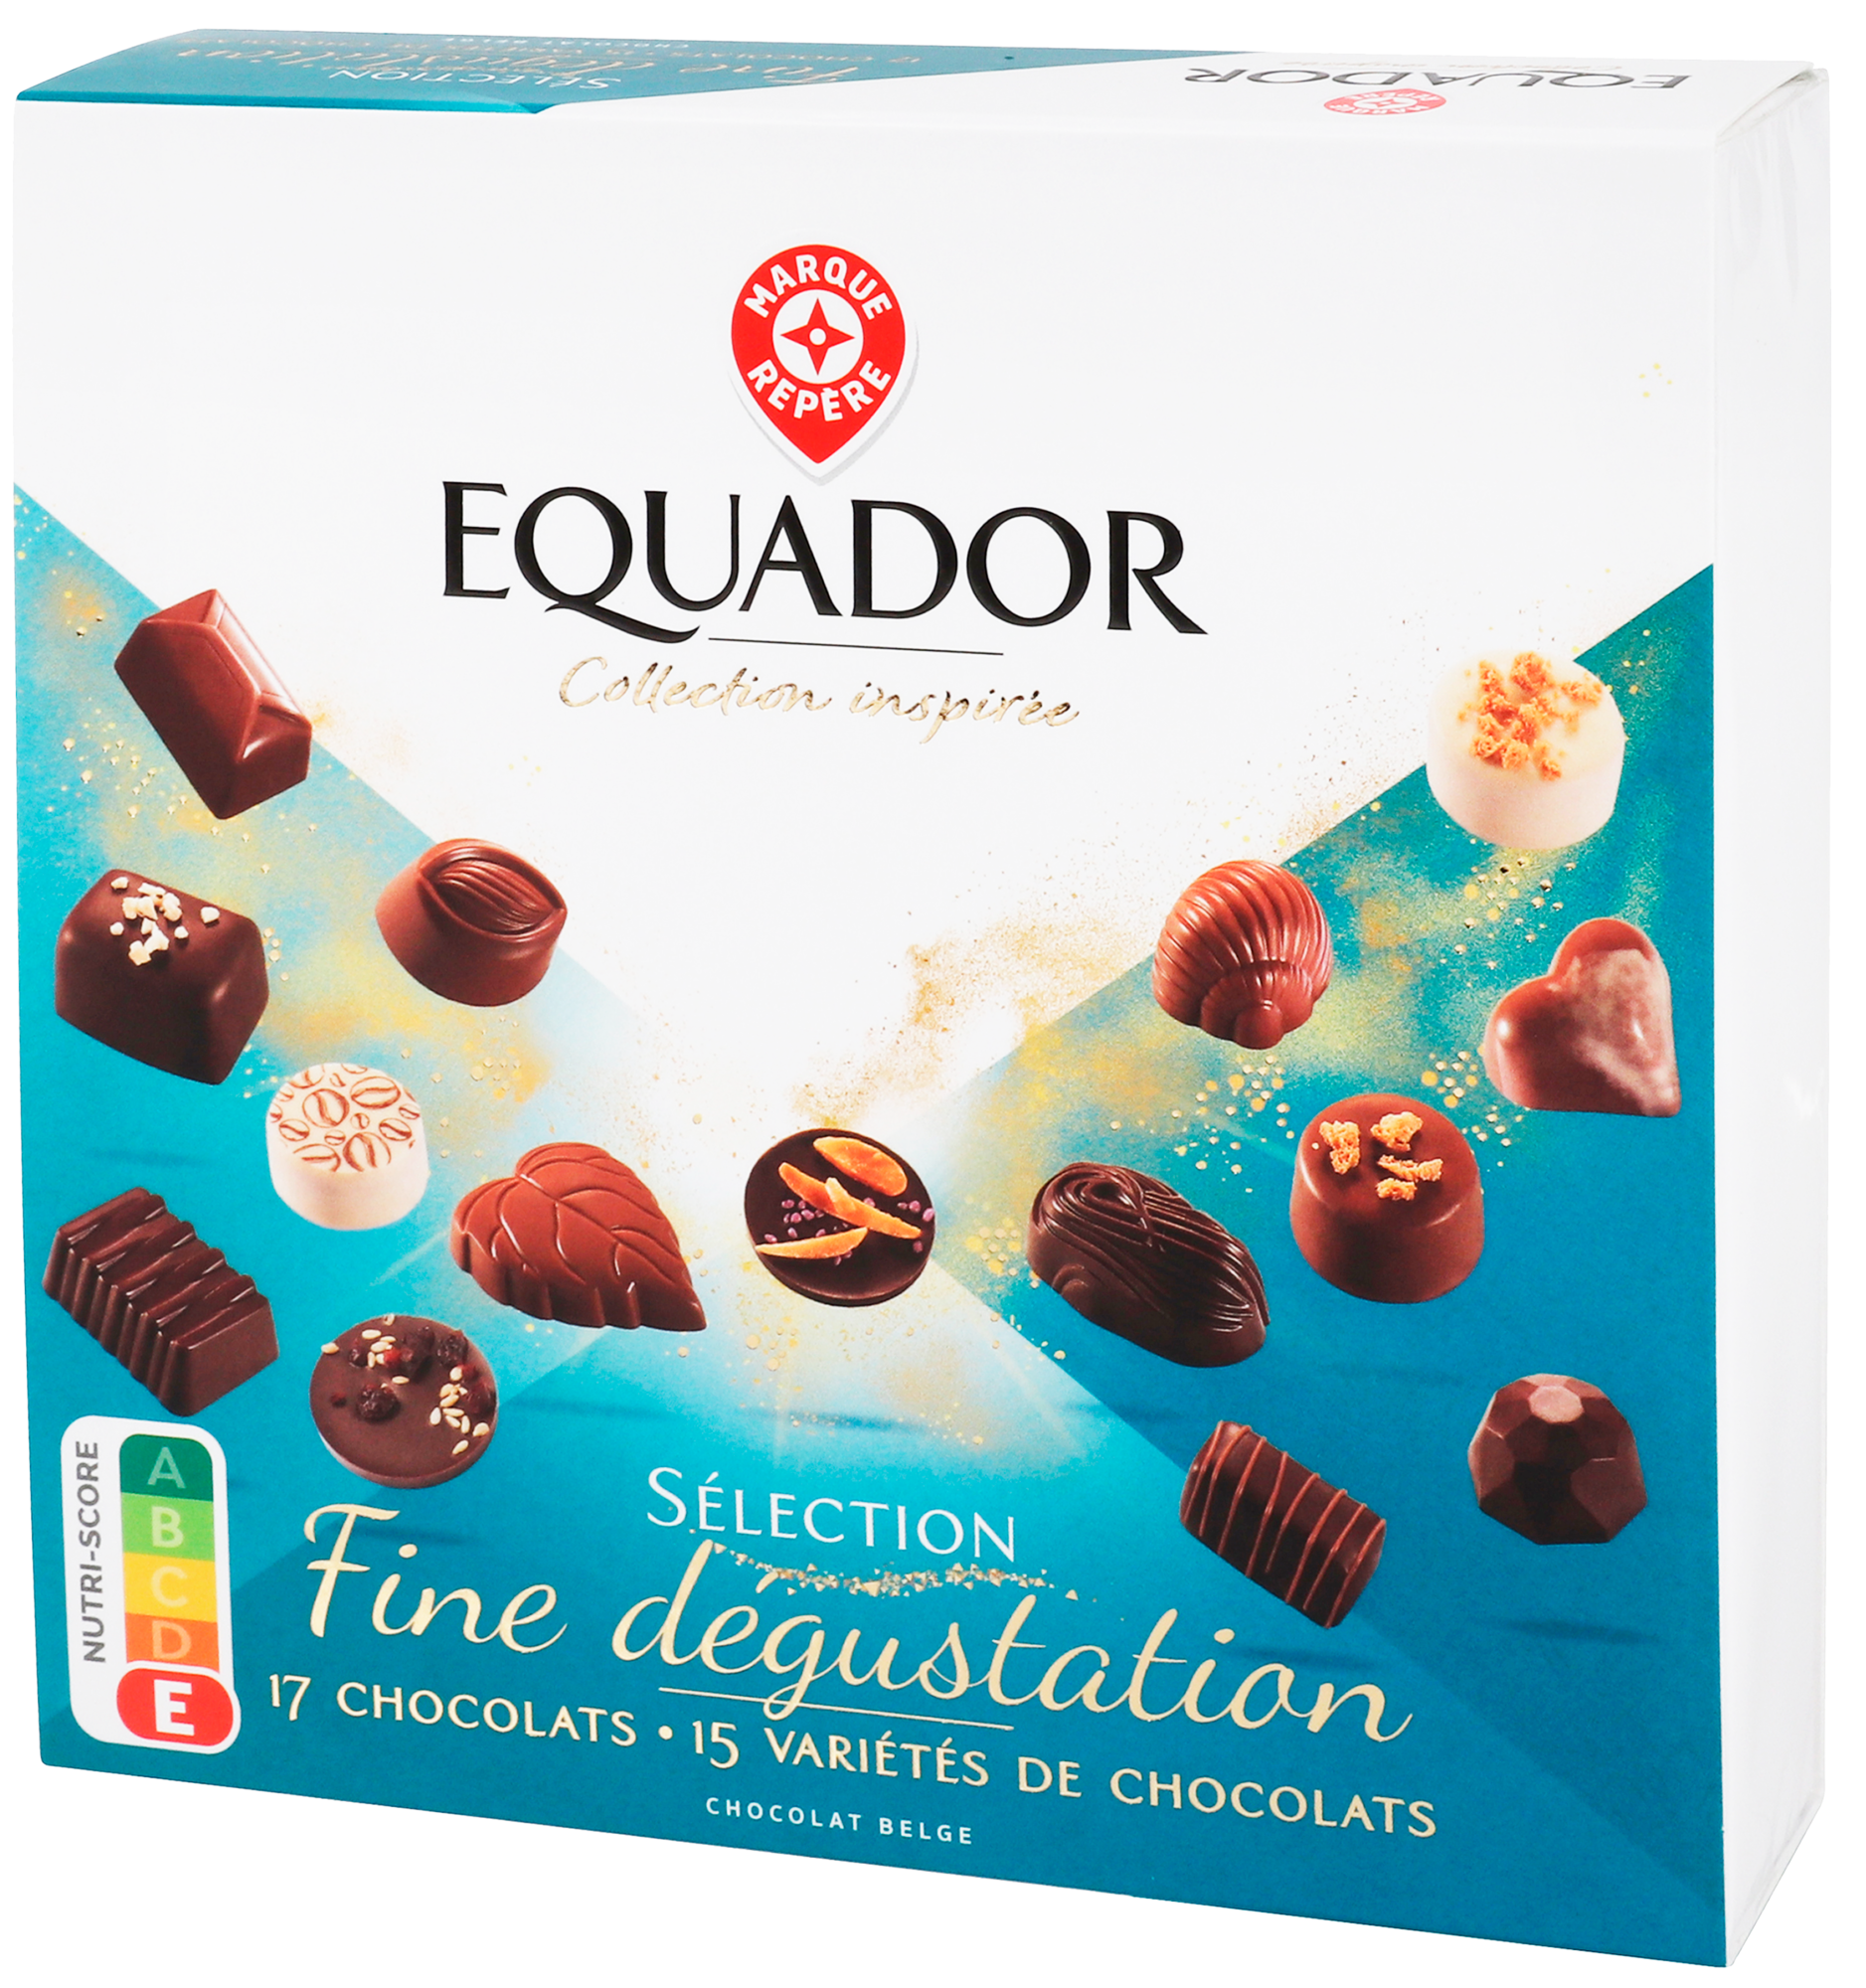 SUR LES PRODUITS PRÉSENTS EN MAGASIN DE LA GAMME COFFRET CHOCOLAT "EQUADOR"